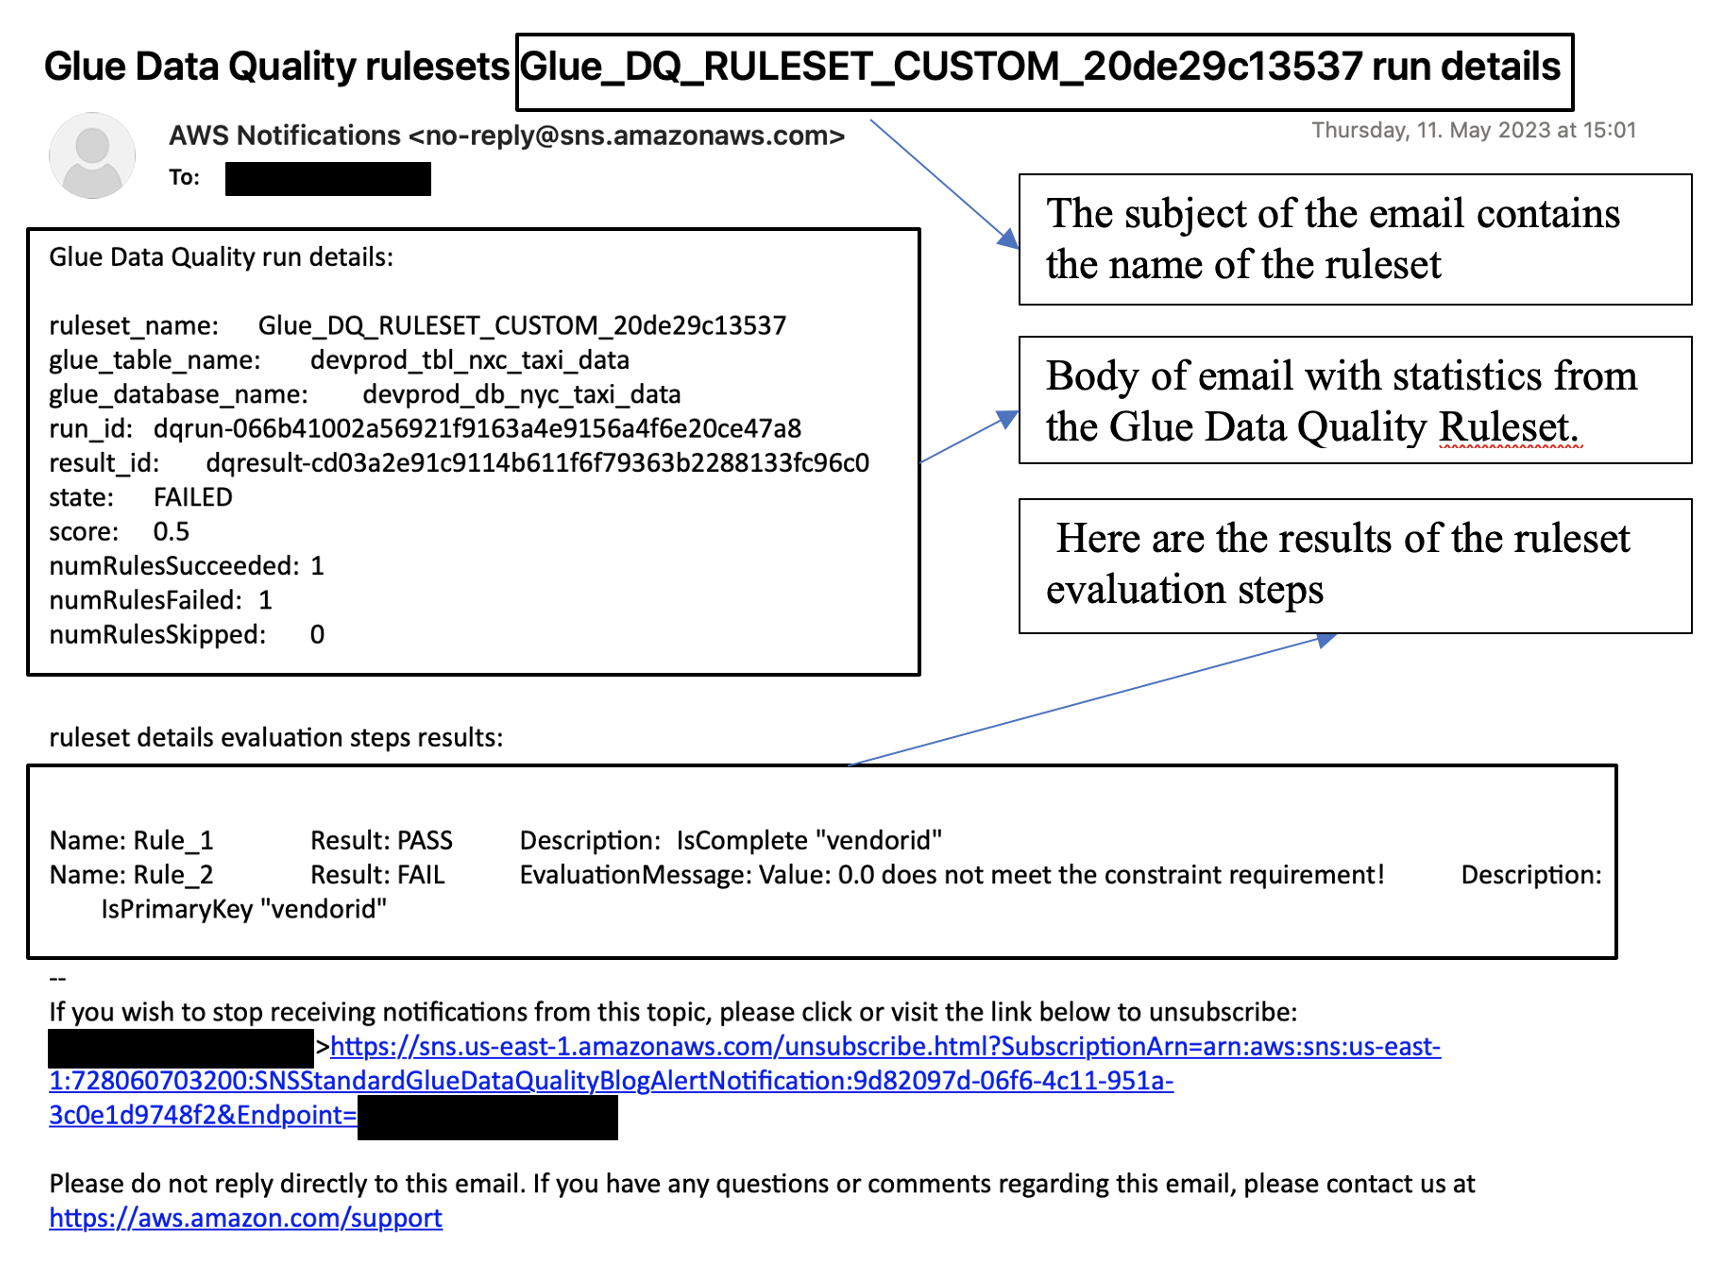 Pemberitahuan kualitas data diformat sebagai email